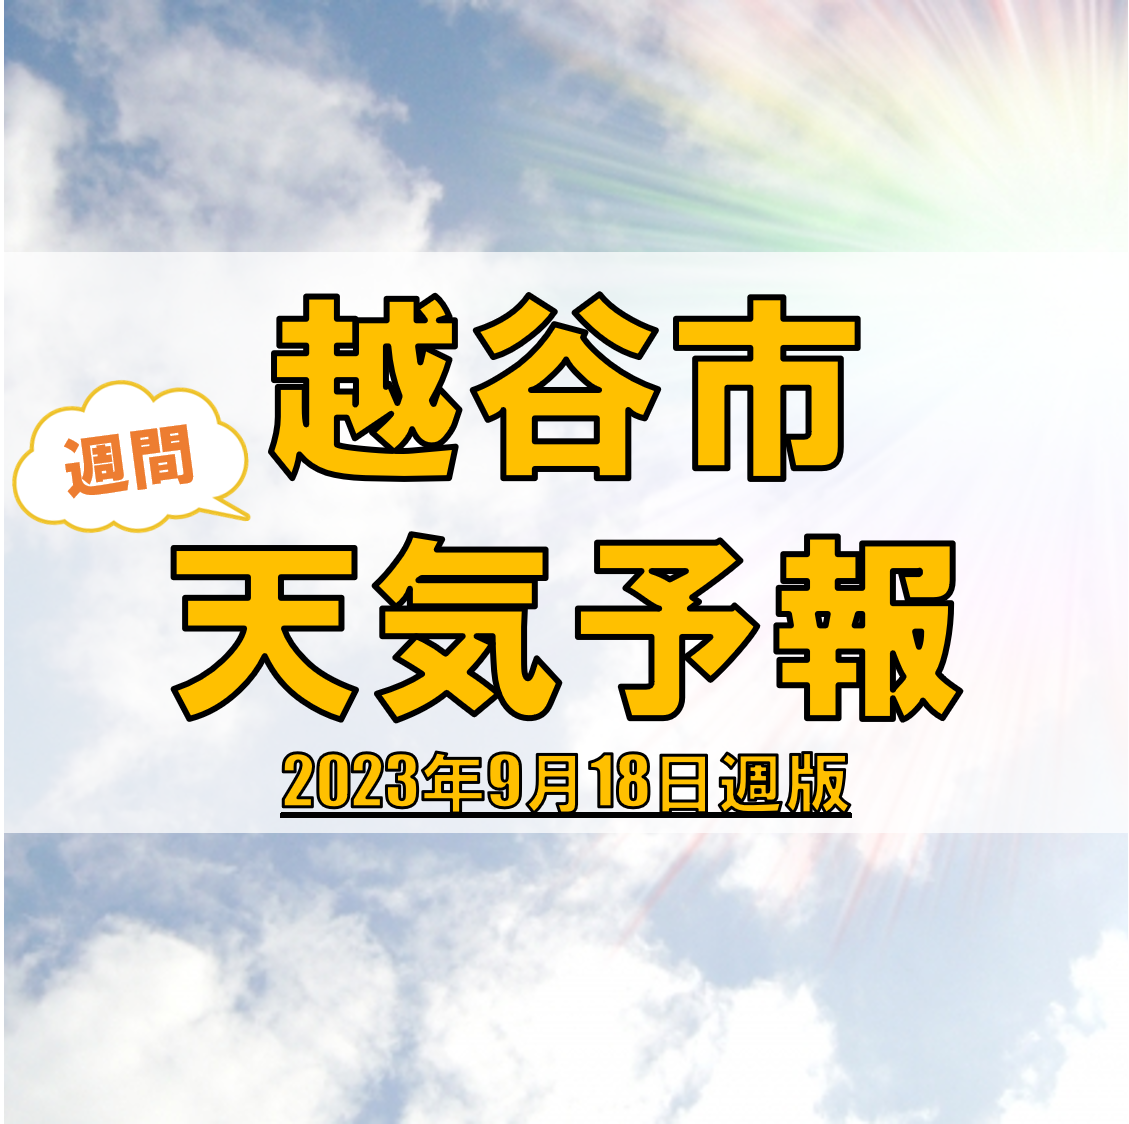 越谷市の天気 週間予報【2023年9月18日週】